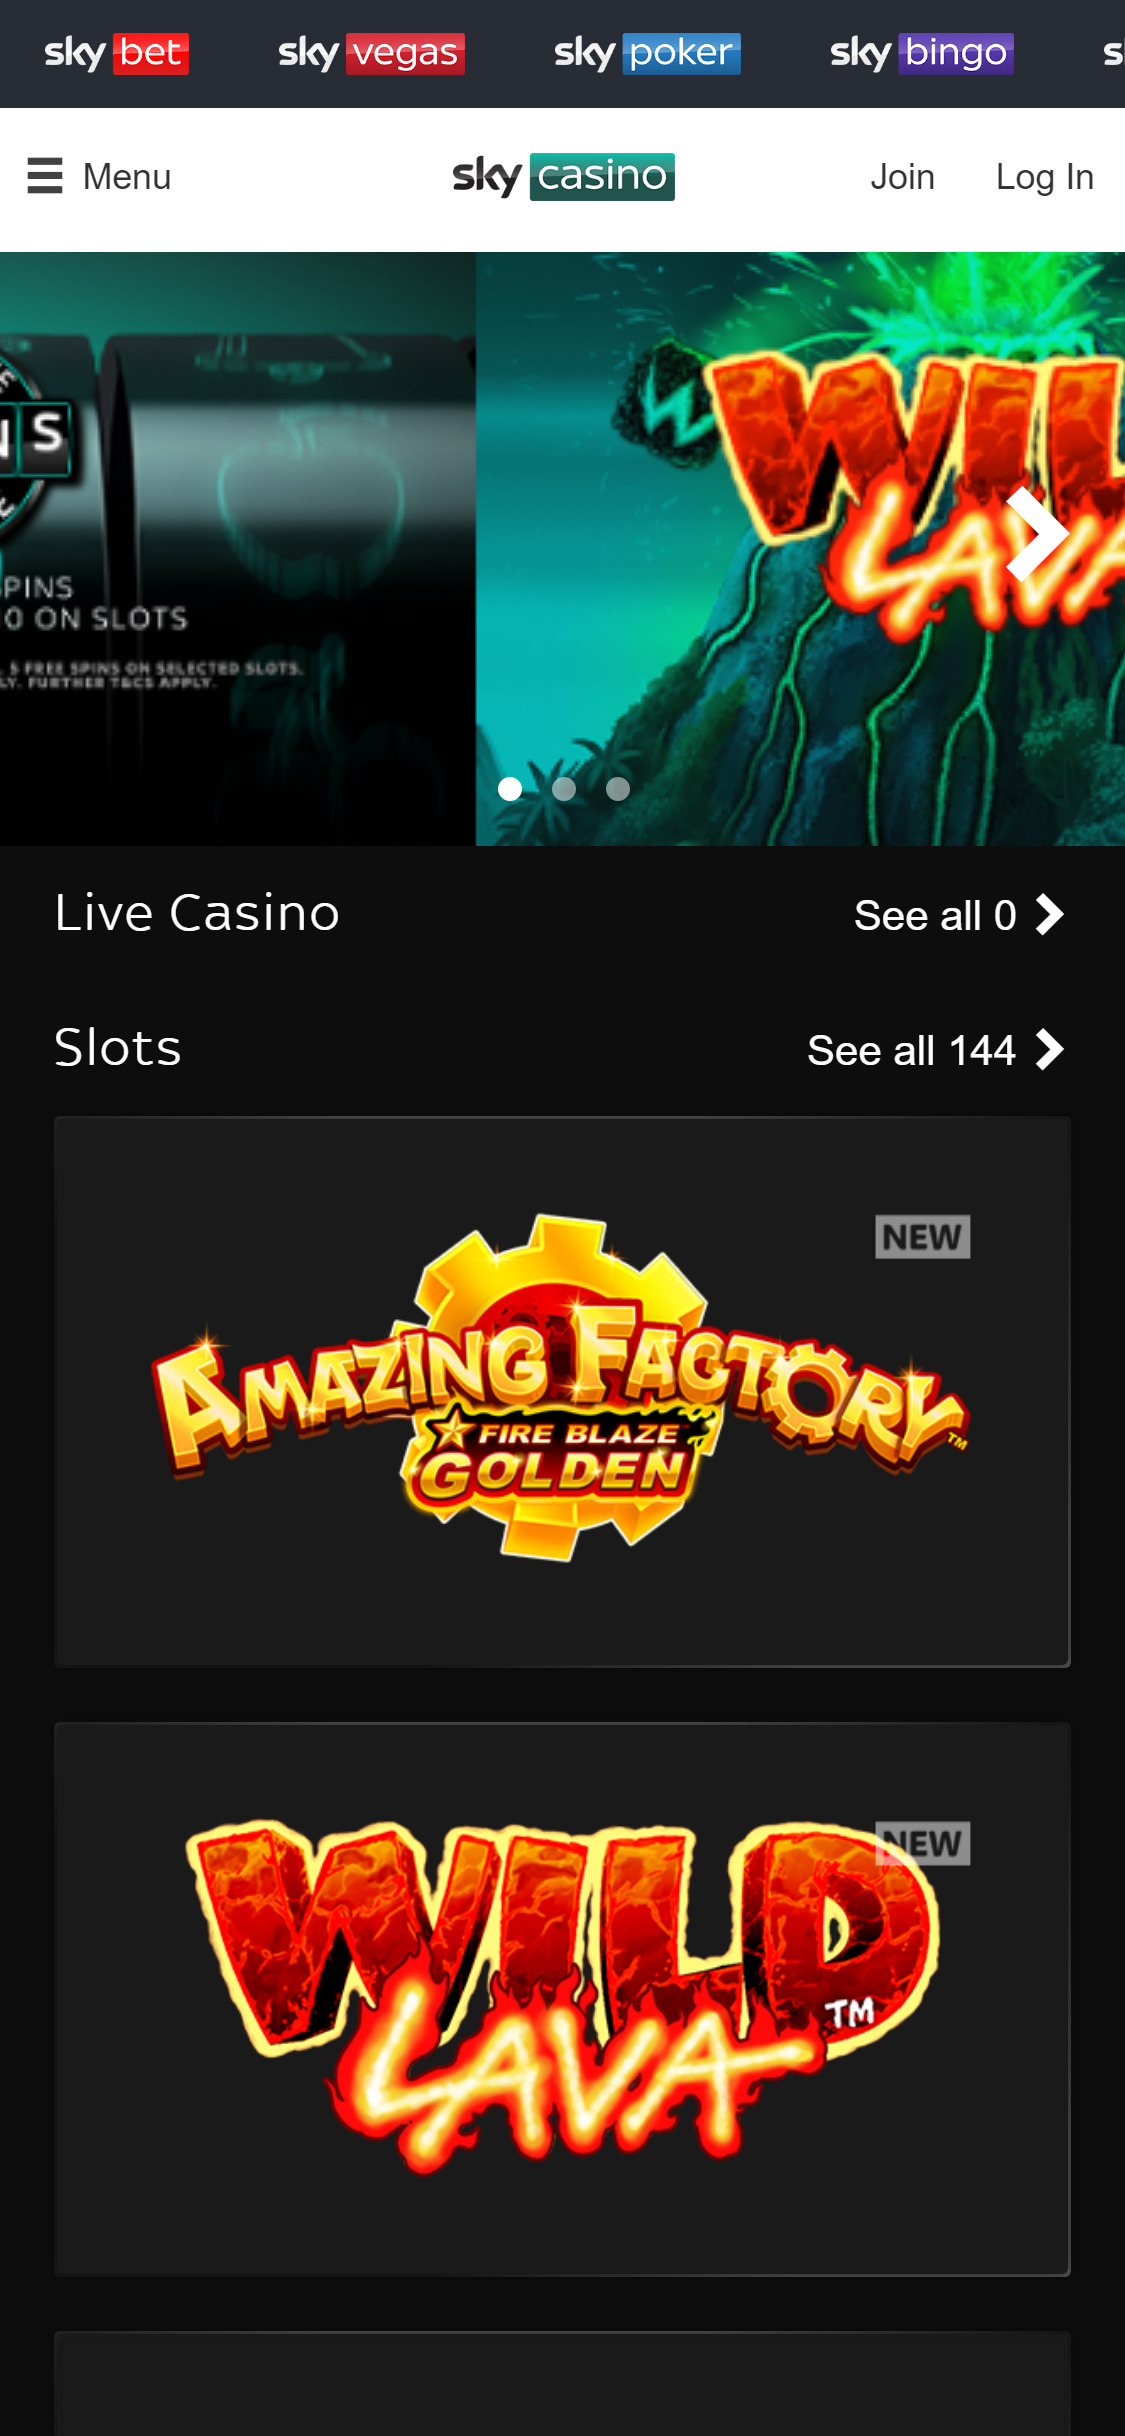 Sky Casino Mobile Review